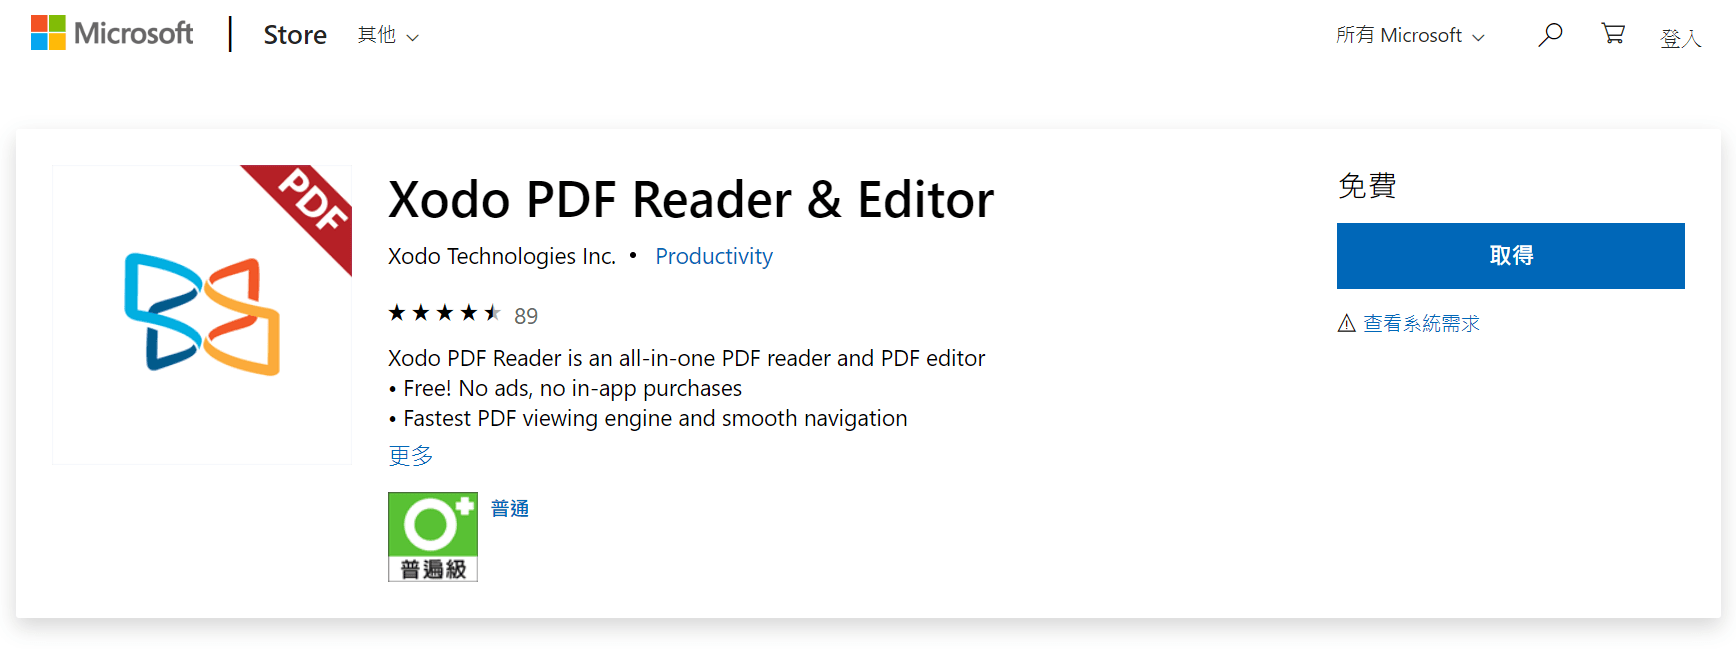 [免費] 編輯 PDF 與手寫筆記好用的軟體 Xodo，檔案小、功能全！